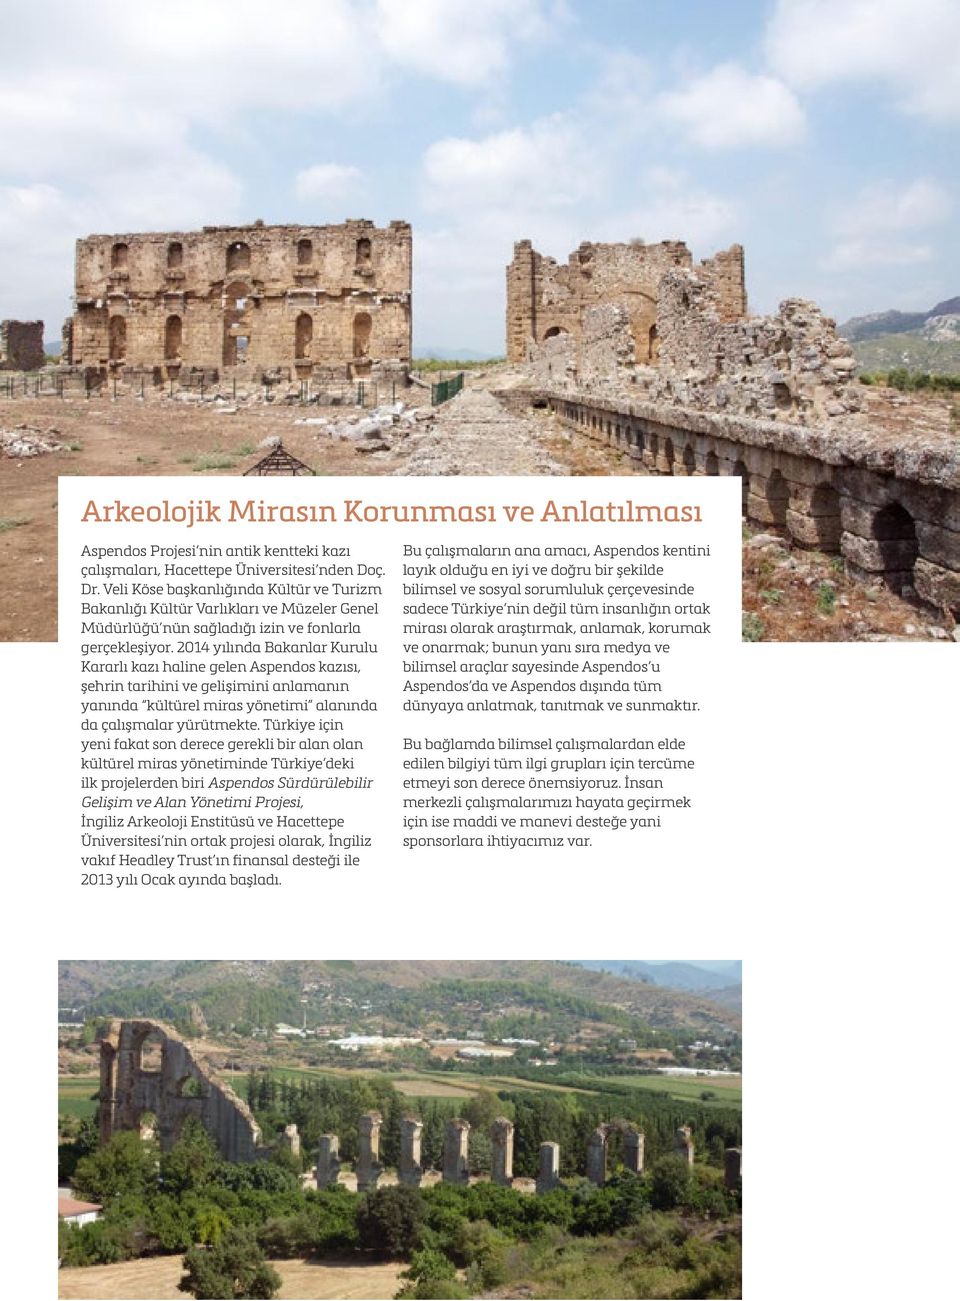 2014 yılında Bakanlar Kurulu Kararlı kazı haline gelen Aspendos kazısı, şehrin tarihini ve gelişimini anlamanın yanında kültürel miras yönetimi alanında da çalışmalar yürütmekte.